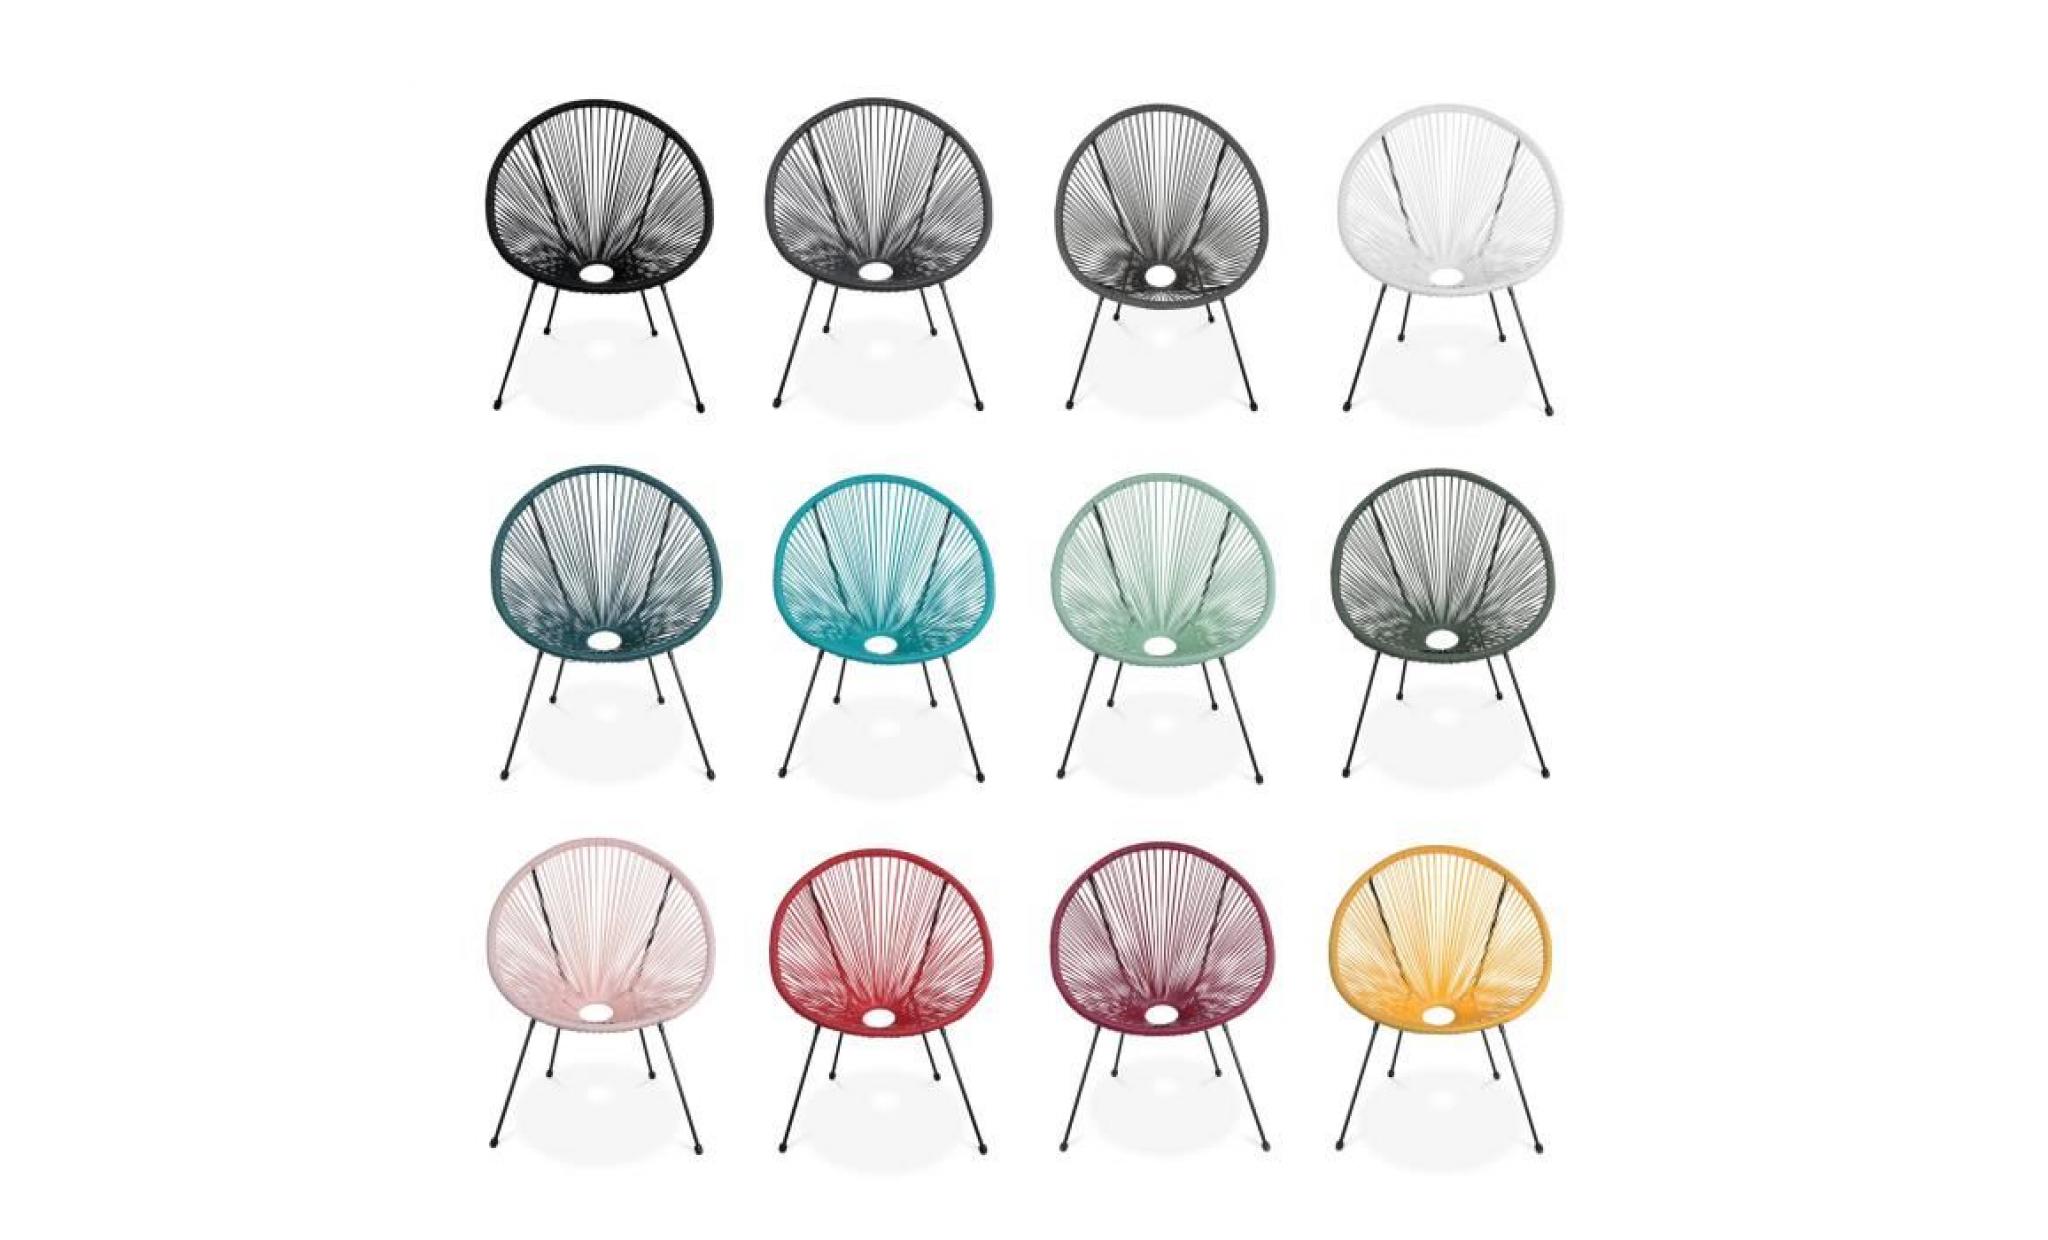 lot de 2 fauteuils design oeuf   acapulco rose pale   fauteuils 4 pieds design rétro, cordage plastique, intérieur / extérieur pas cher